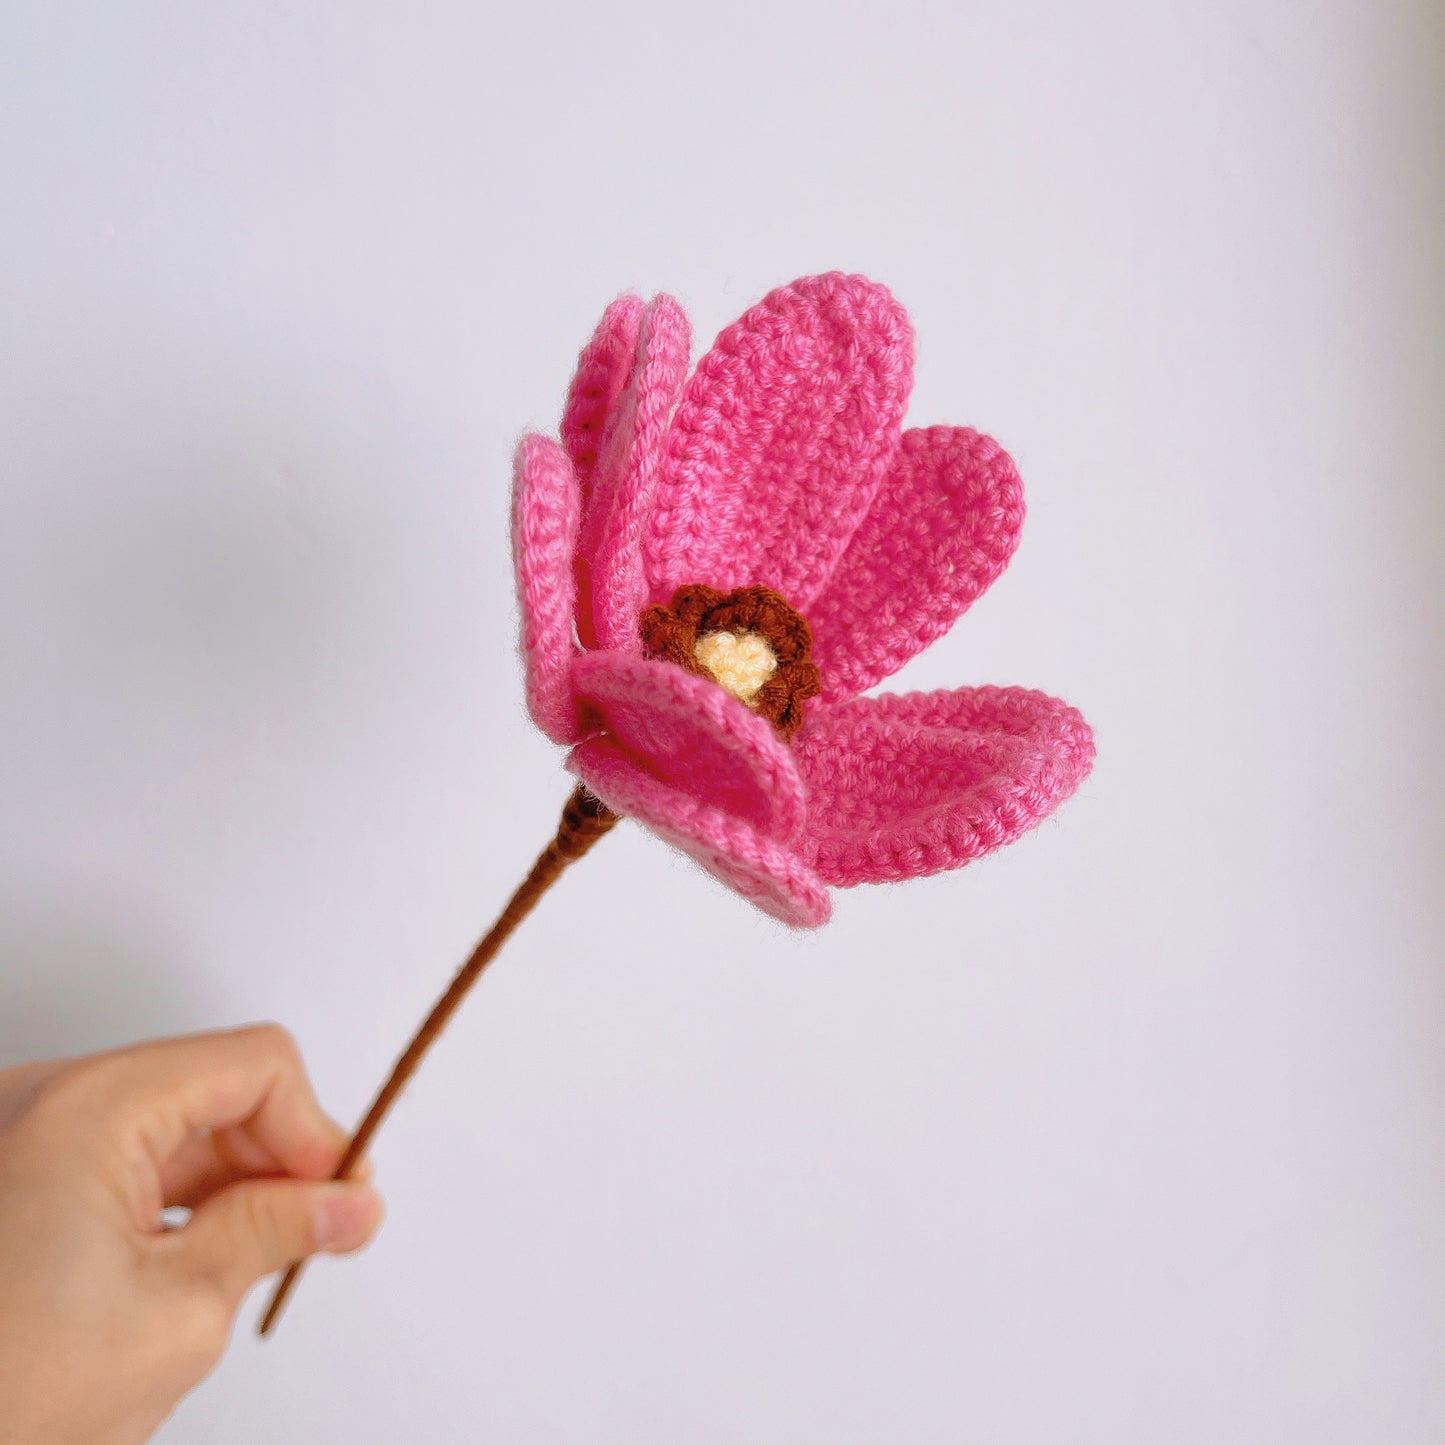 Bouquet de fleurs personnifié au crochet, fait à la main, d'inspiration vintage, avec jasmin, magnolia et lys